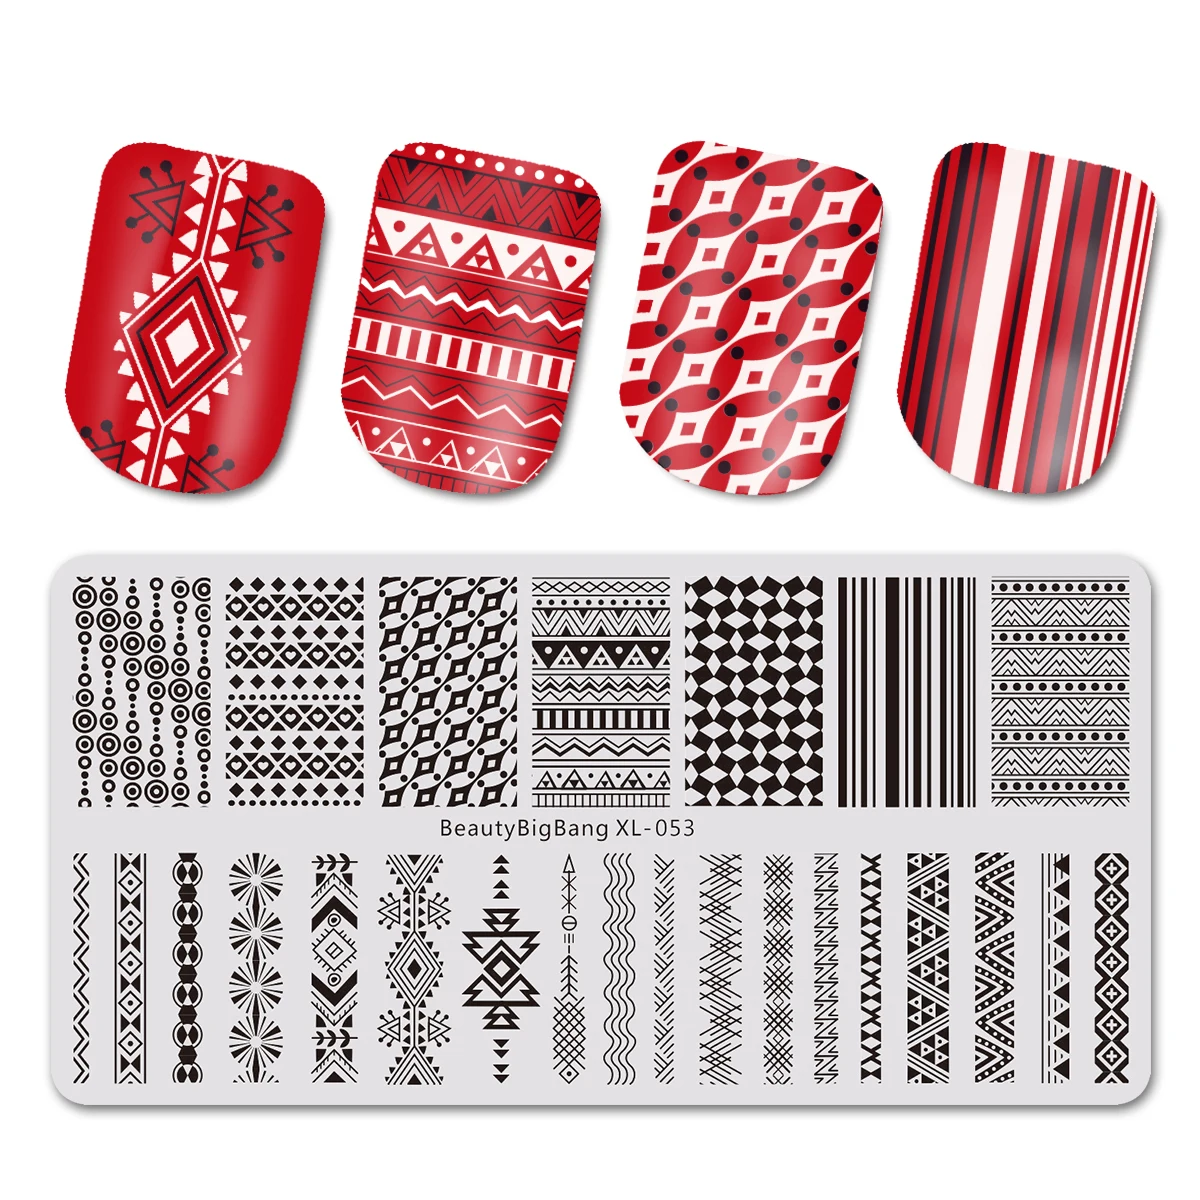 BEAUTYBIGBANG ногтей осень и зима свитер шаблон прямоугольный, для нейл-арта штамп шаблон проверенный дизайн ногтей пластины изображения пластины - Цвет: 684467770531